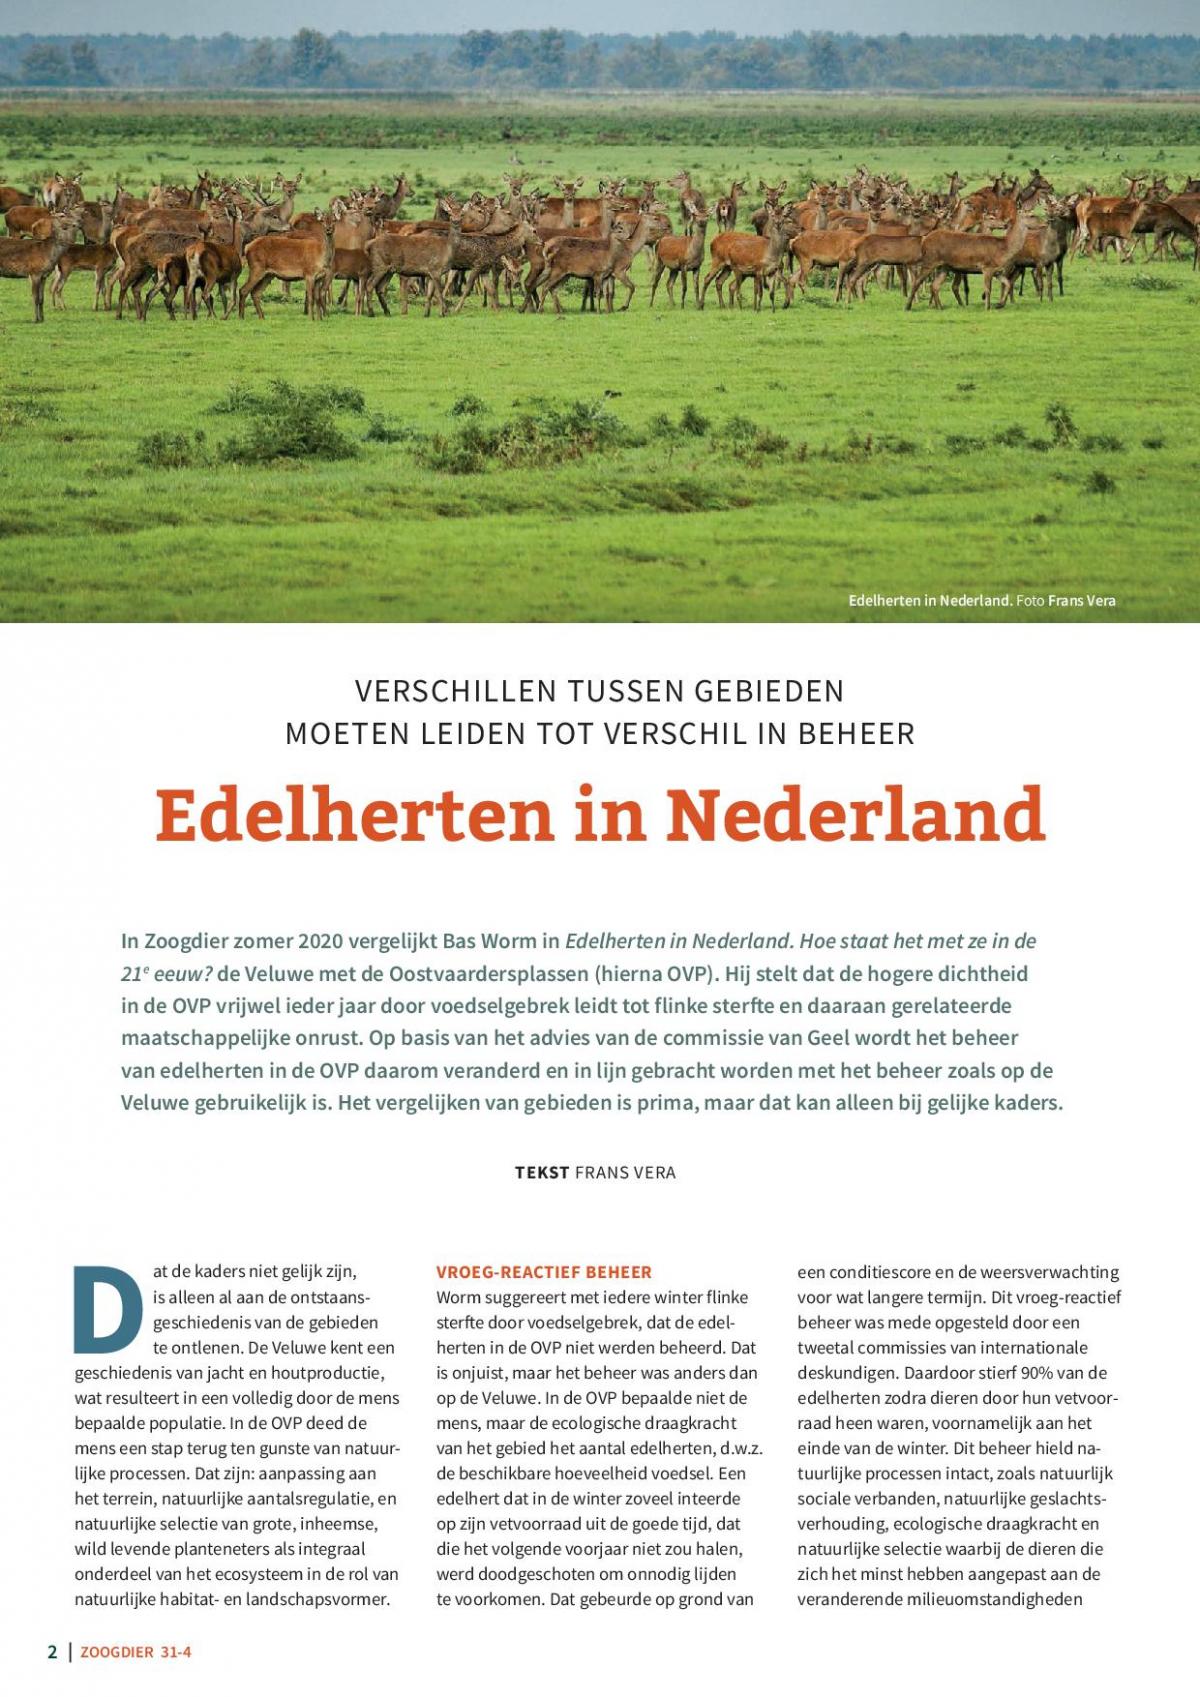 Zoogdier 31-4 Edelherten in Nederland